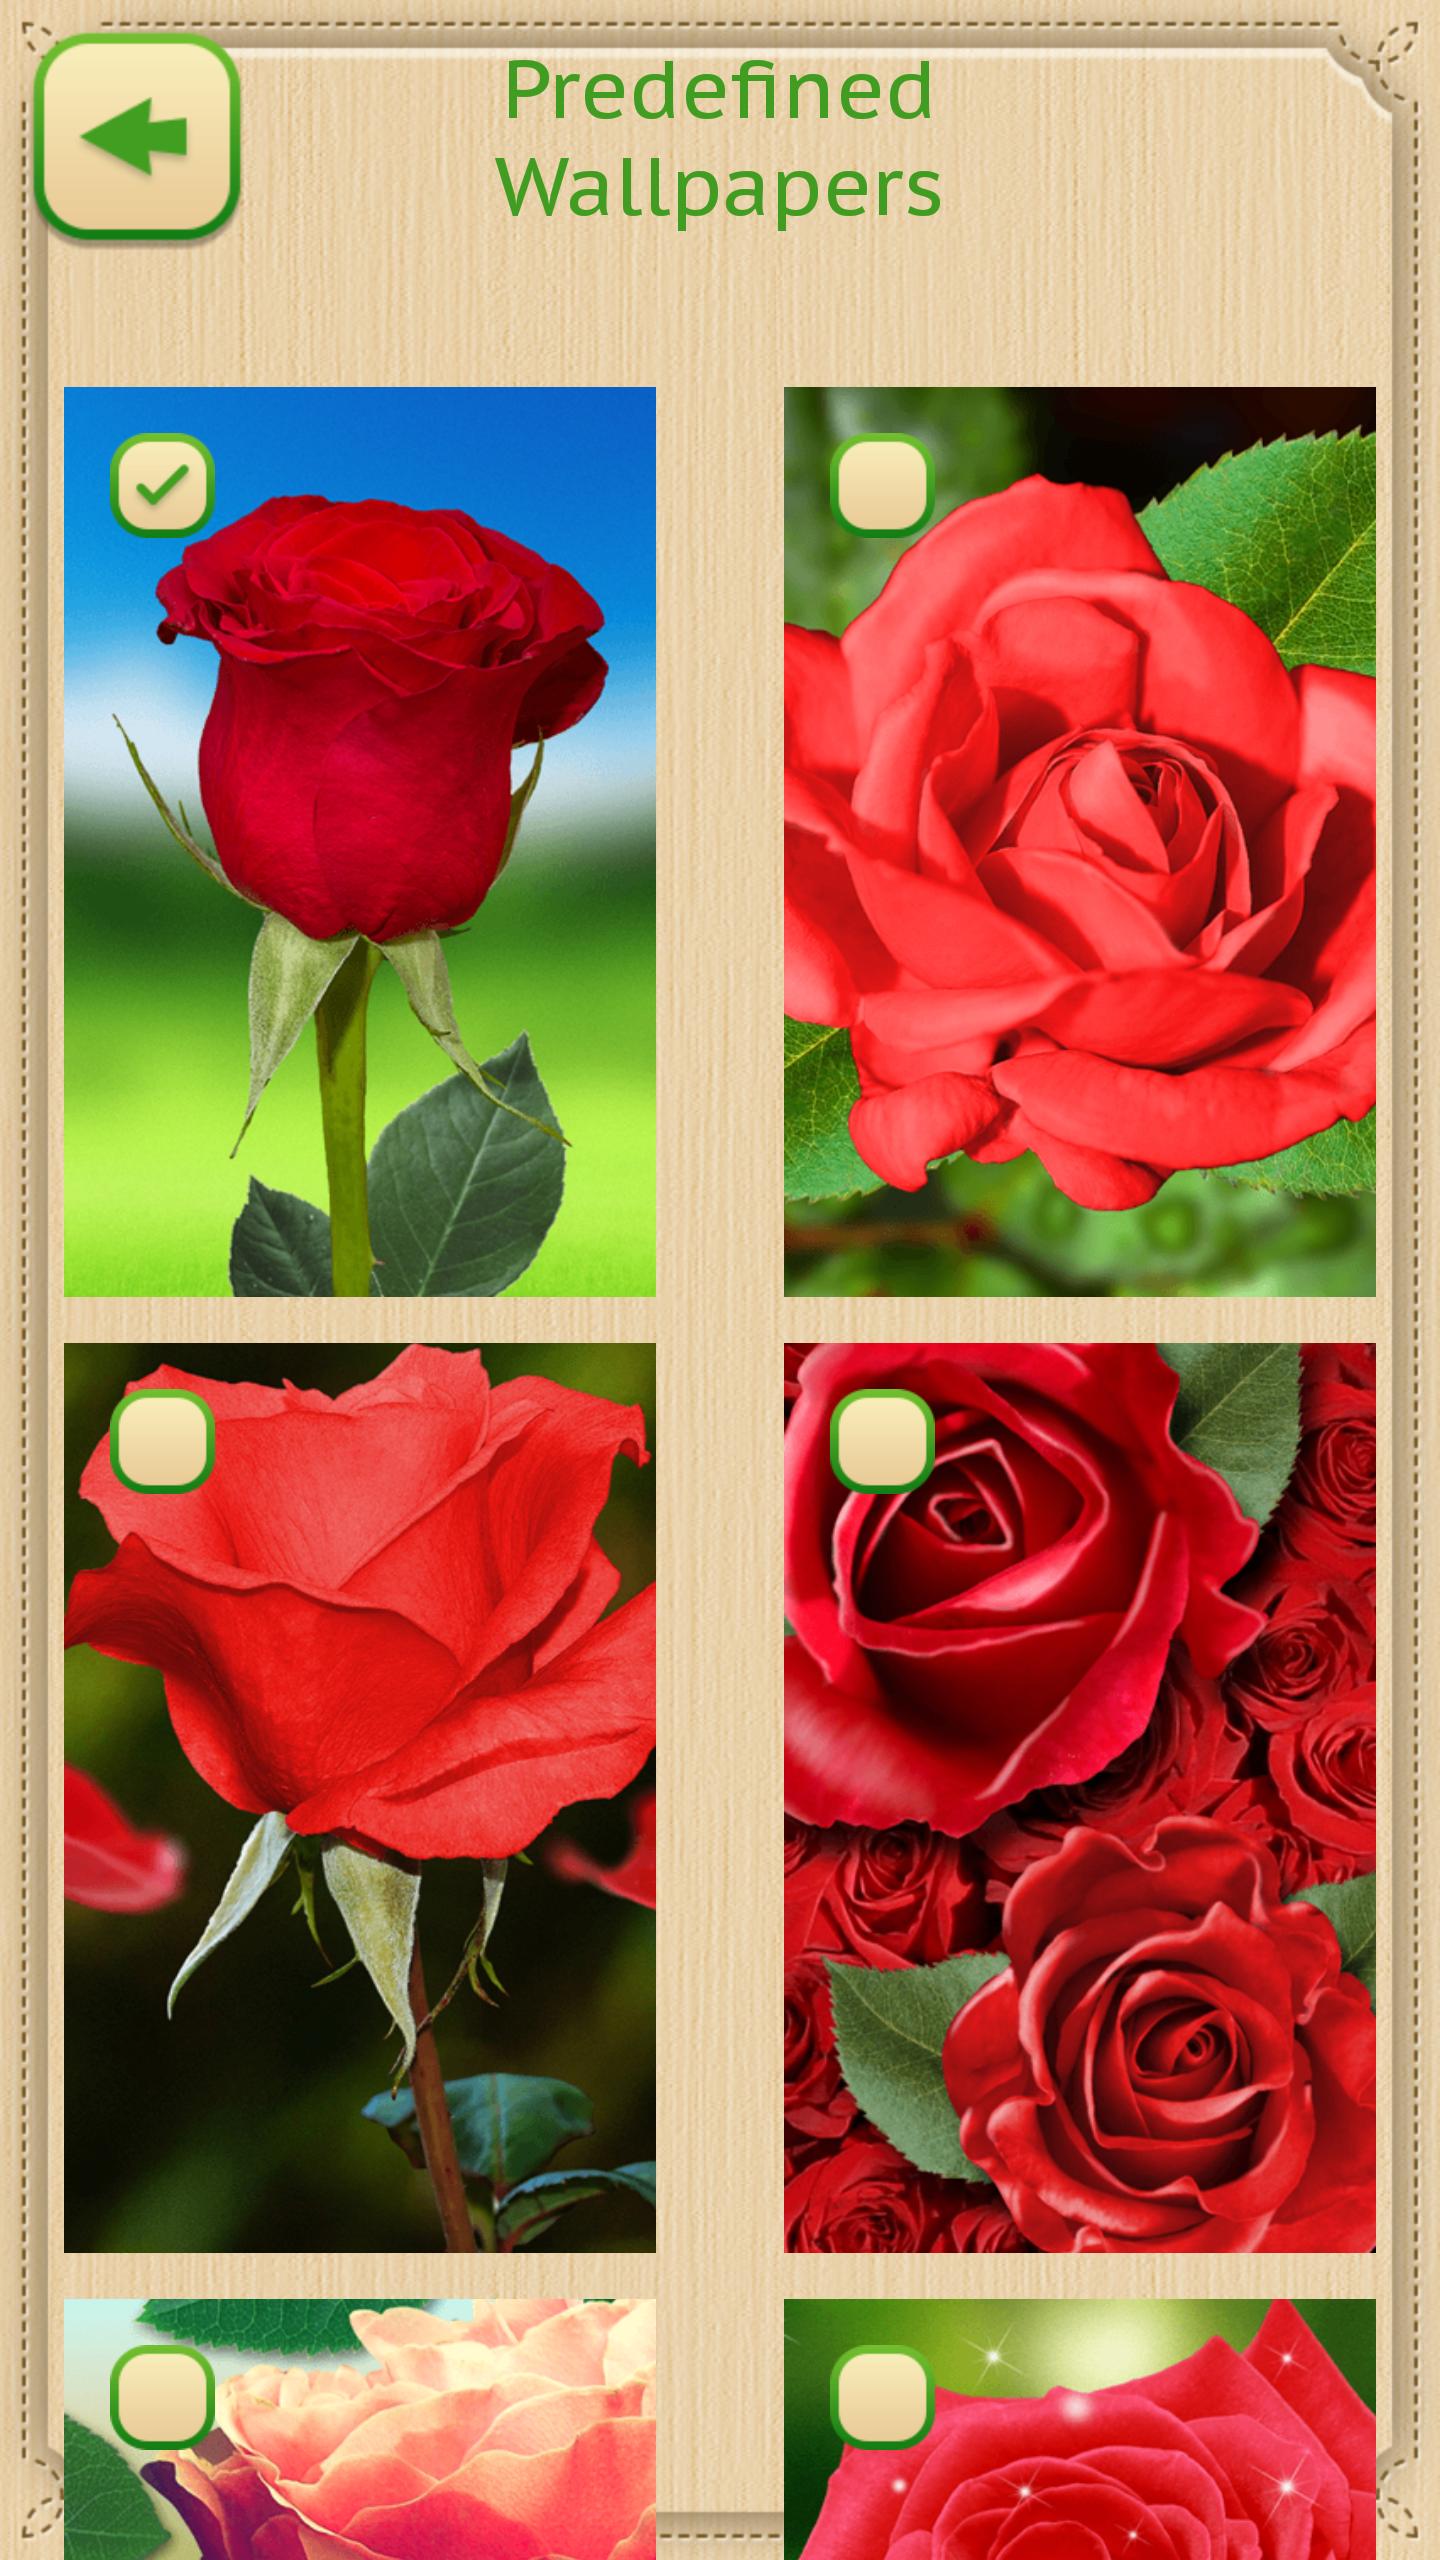 Walpaper Bunga Mawar Merah For Android APK Download